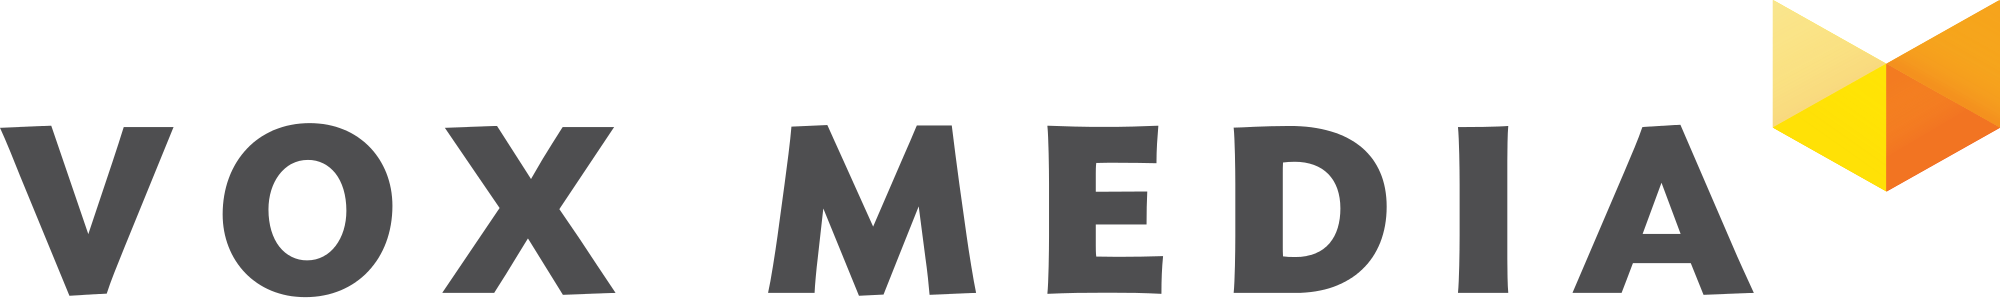 Vox_Media_logo.svg.png